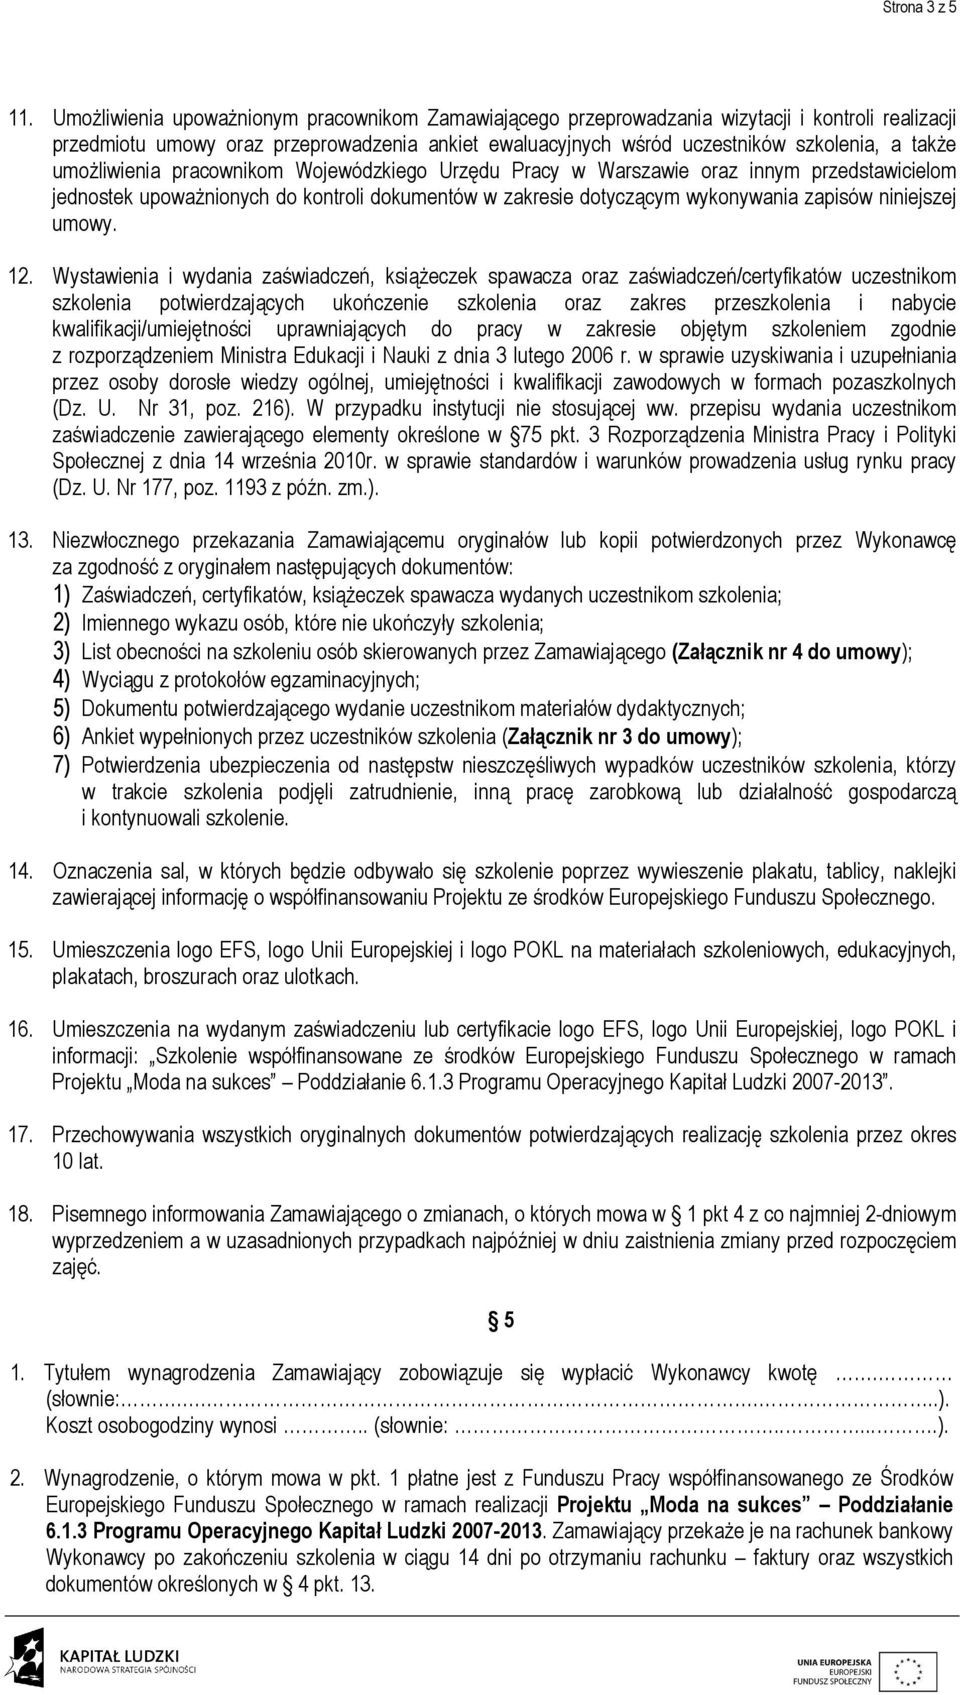 umożliwienia pracownikom Wojewódzkiego Urzędu Pracy w Warszawie oraz innym przedstawicielom jednostek upoważnionych do kontroli dokumentów w zakresie dotyczącym wykonywania zapisów niniejszej umowy.